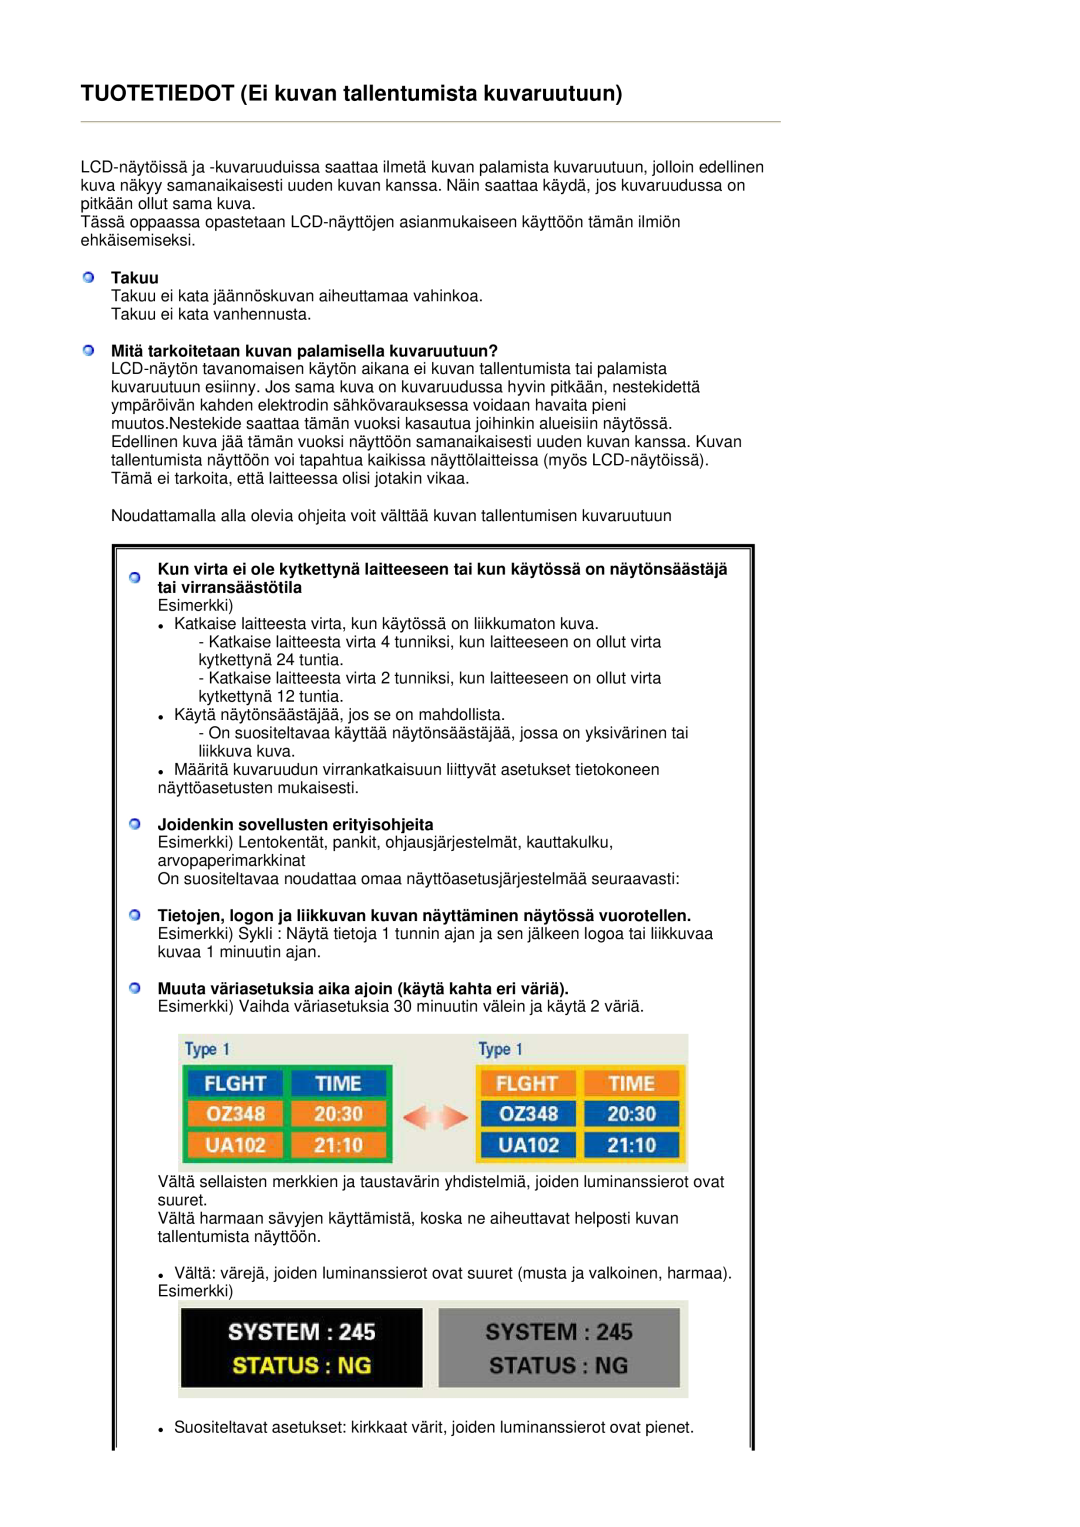 Samsung LS17DOASS/EDC manual TUOTETIEDOT Ei kuvan tallentumista kuvaruutuun, Takuu, Joidenkin sovellusten erityisohjeita 